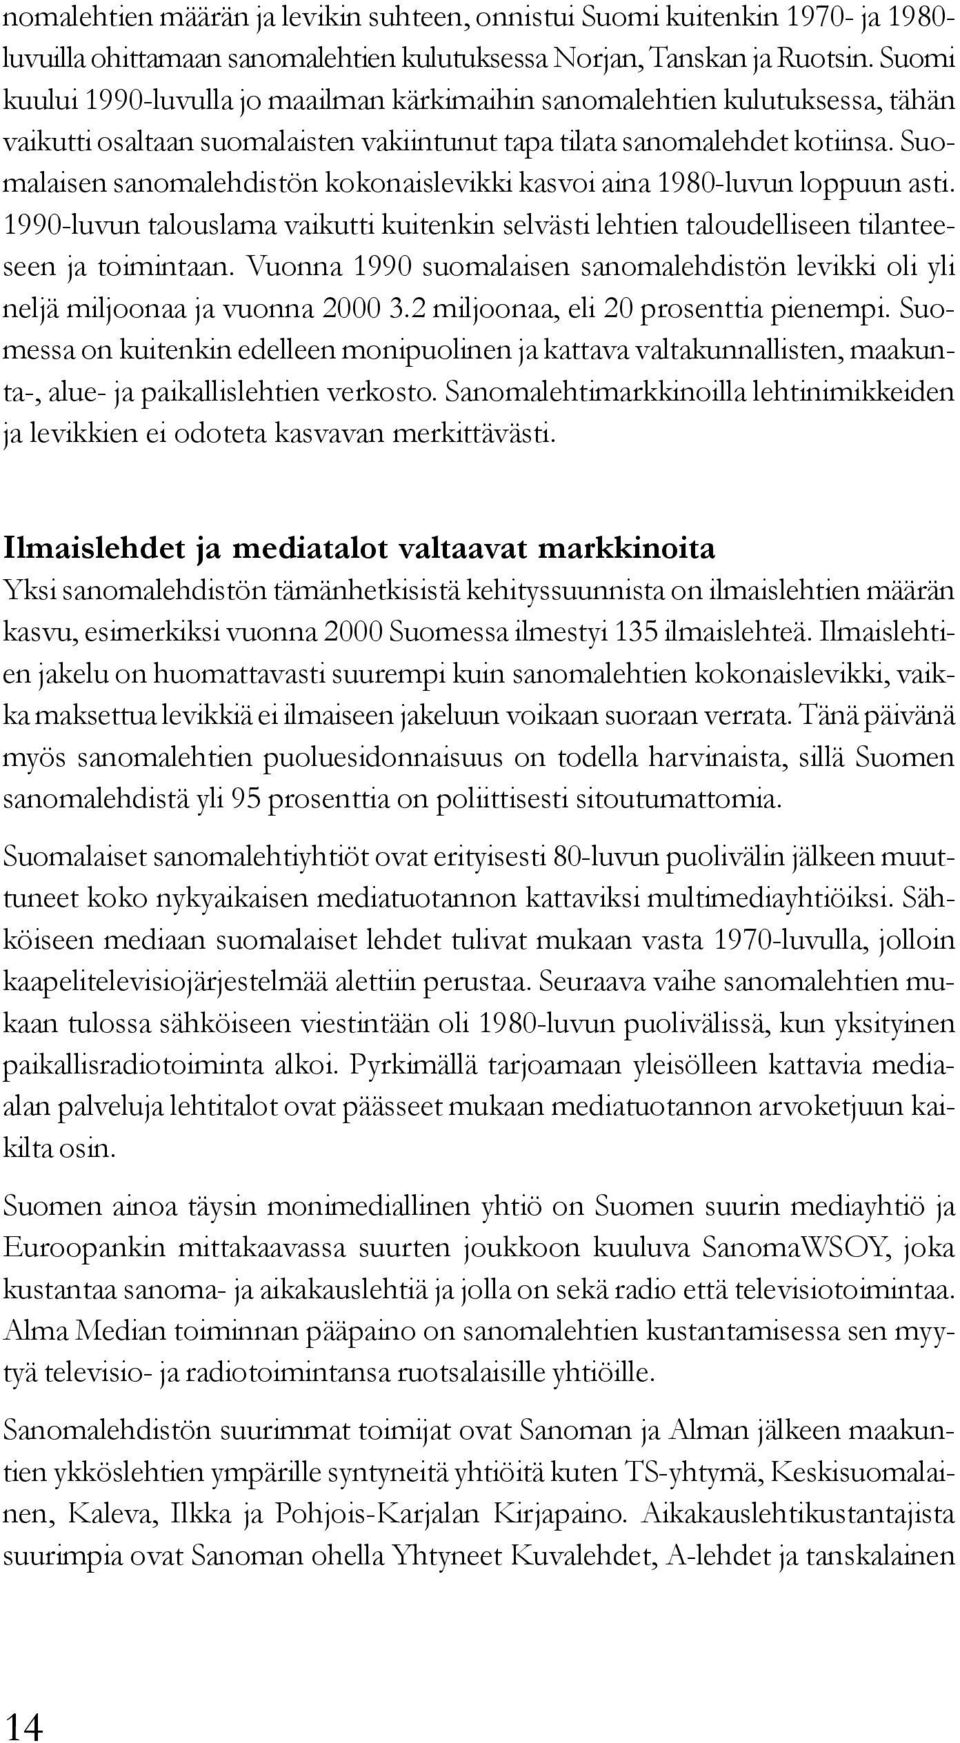 Suomalaisen sanomalehdistön kokonaislevikki kasvoi aina 1980-luvun loppuun asti. 1990-luvun talouslama vaikutti kuitenkin selvästi lehtien taloudelliseen tilanteeseen ja toimintaan.